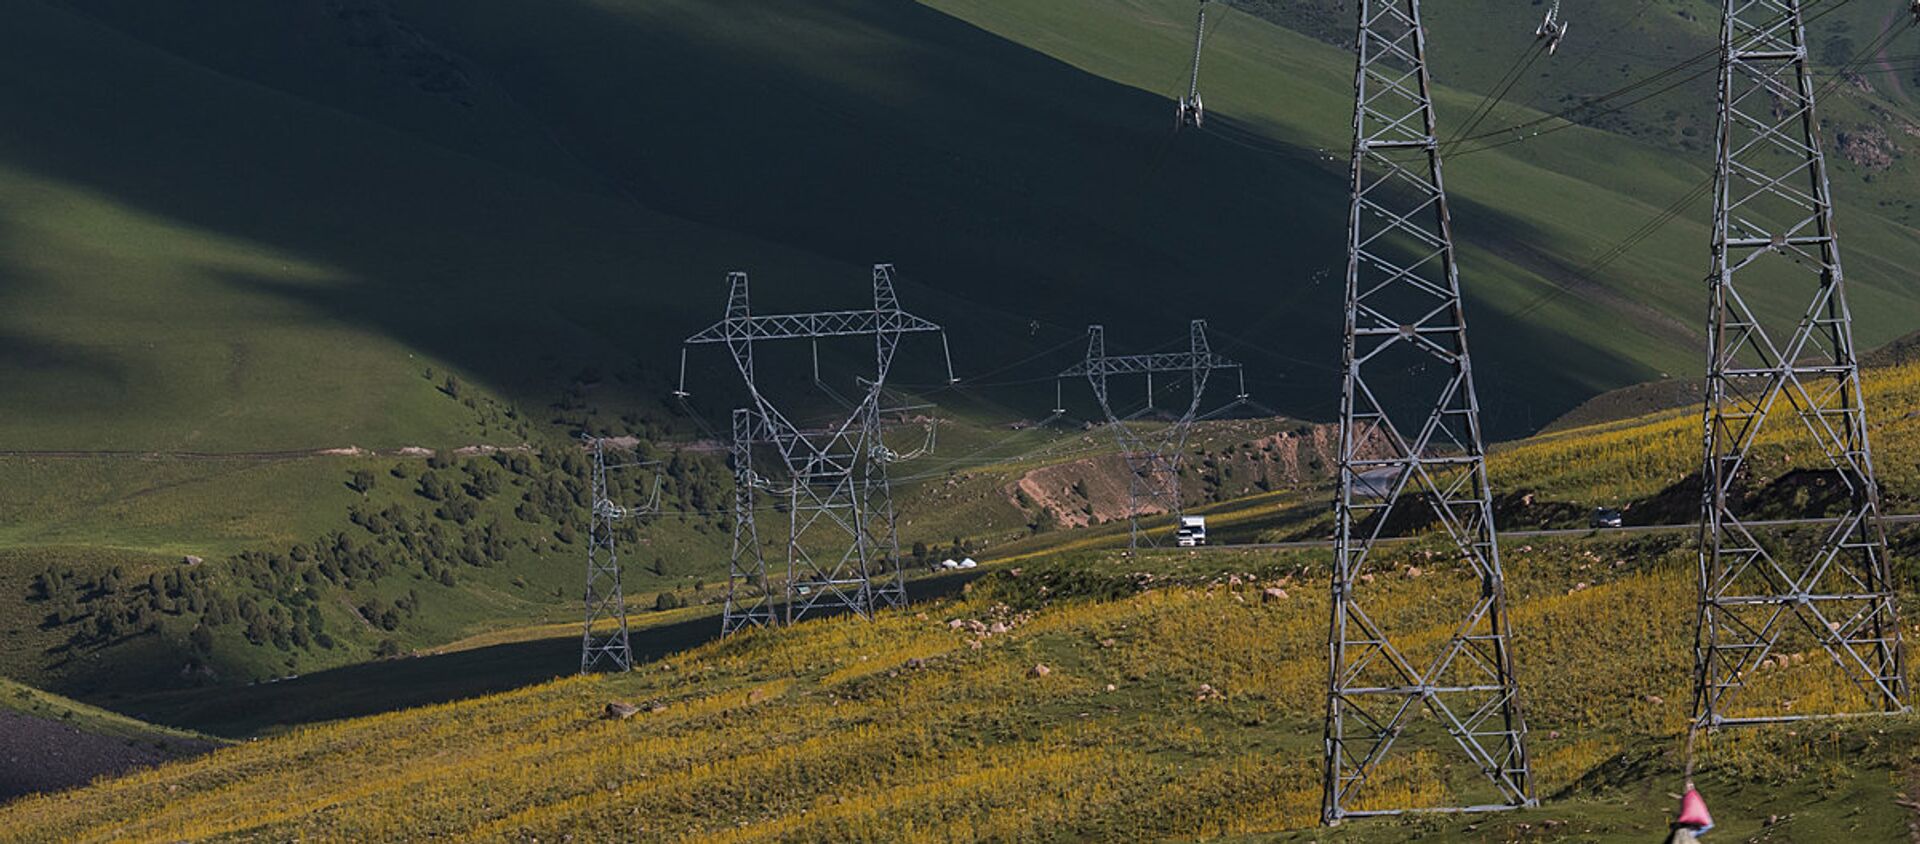 Linii elektroperedachi v ushelye Chichkan v Kirgizii - Sputnik O‘zbekiston, 1920, 22.10.2020